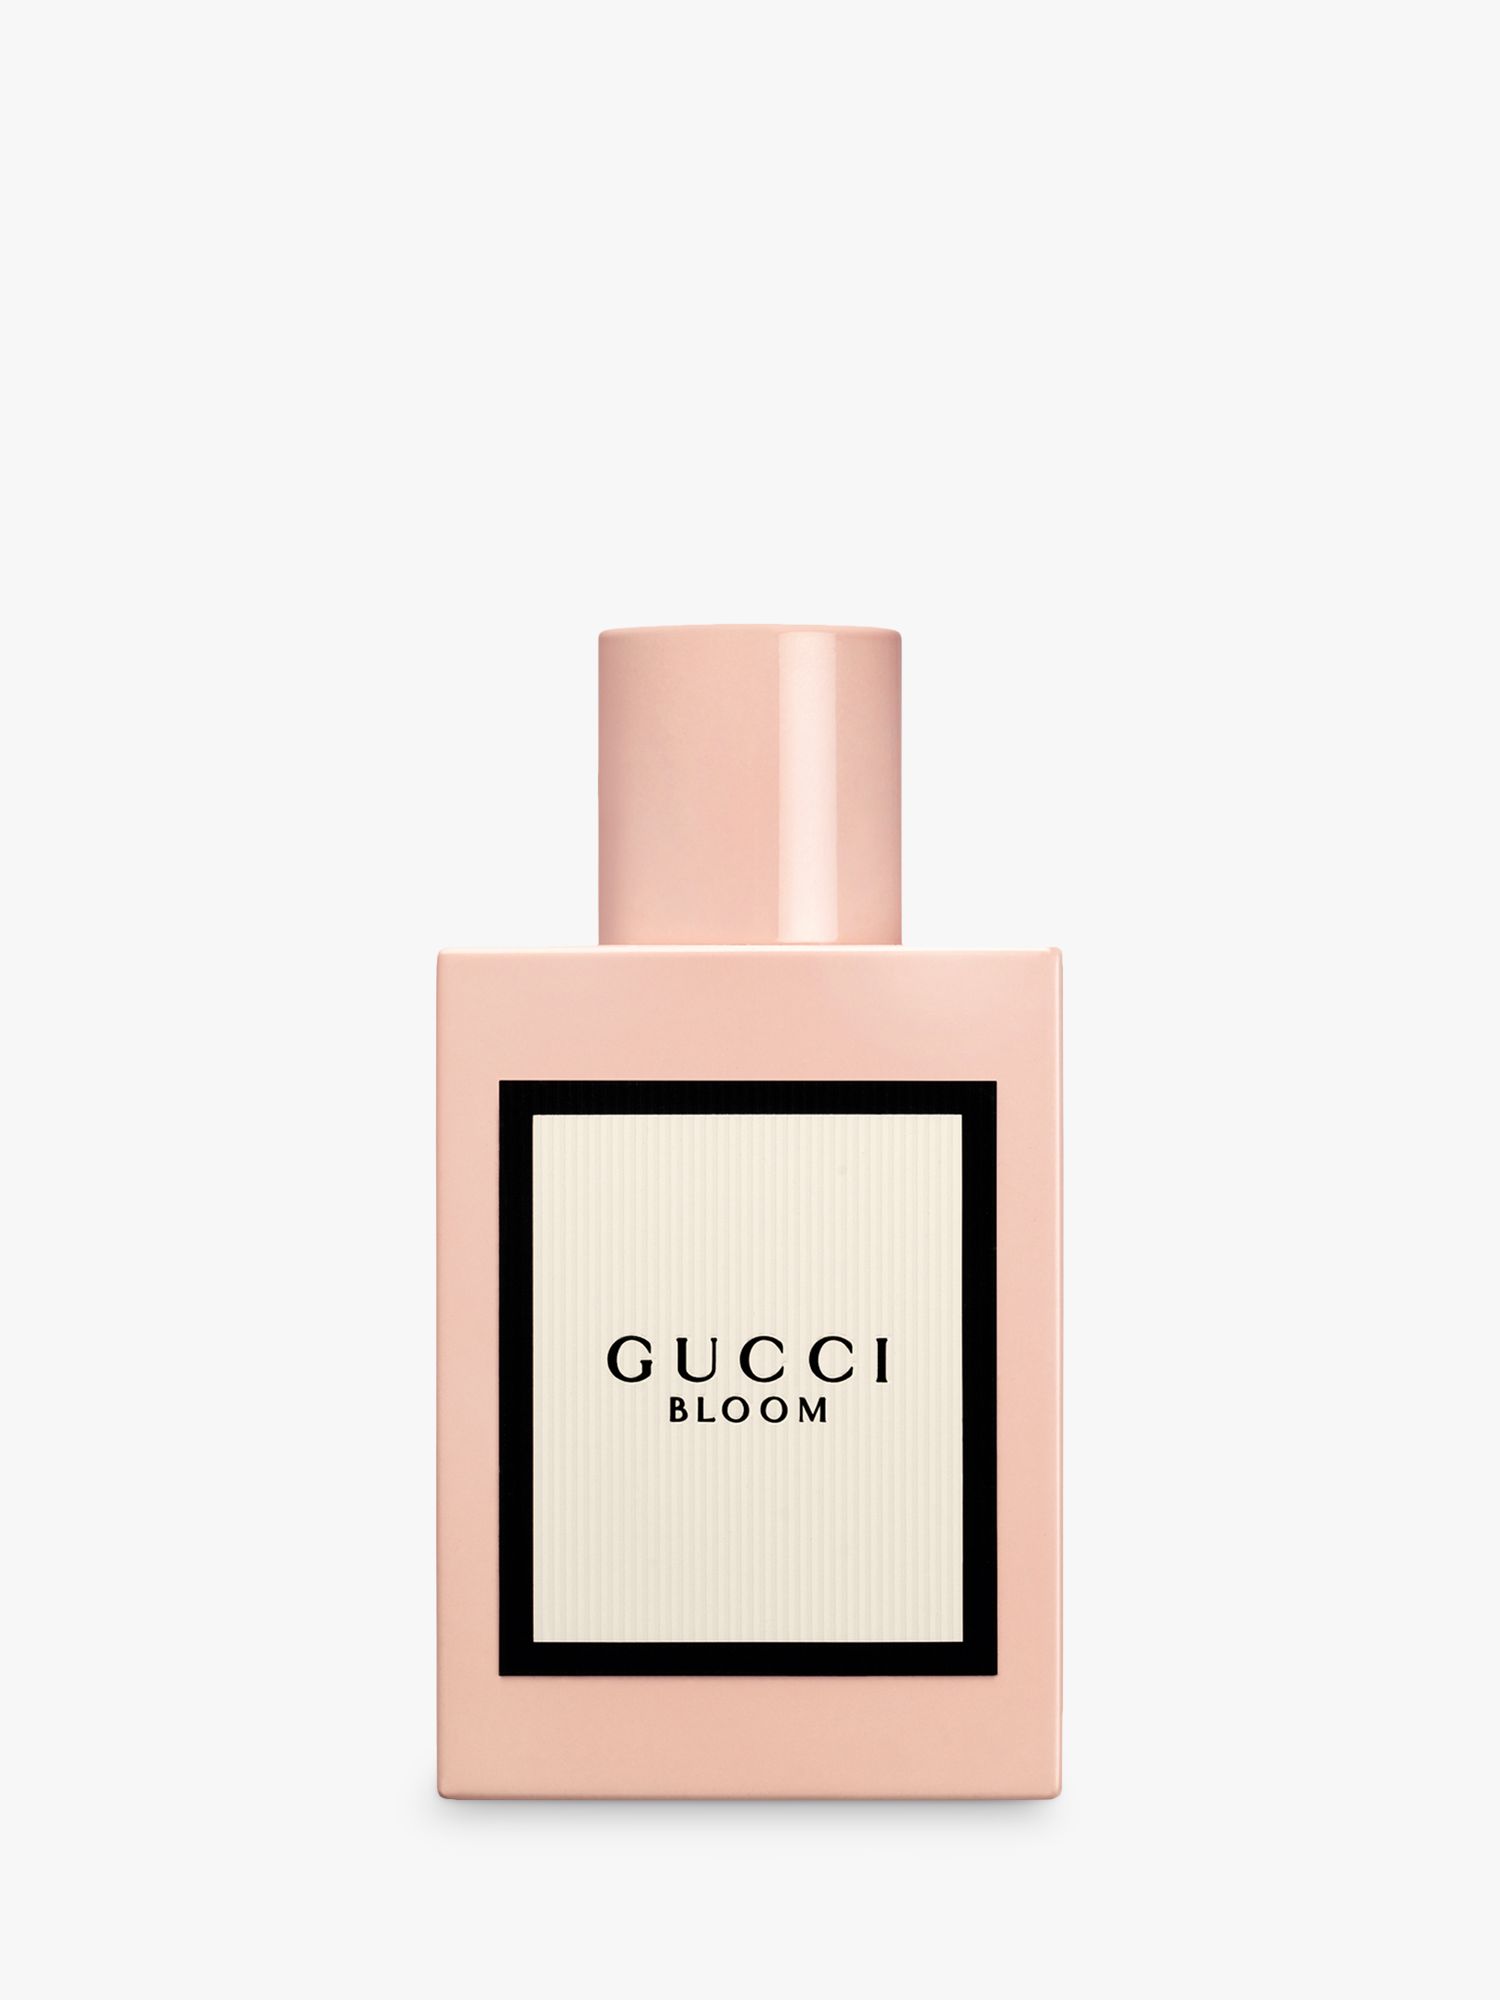 Gucci Bloom Eau de Parfum, 50ml